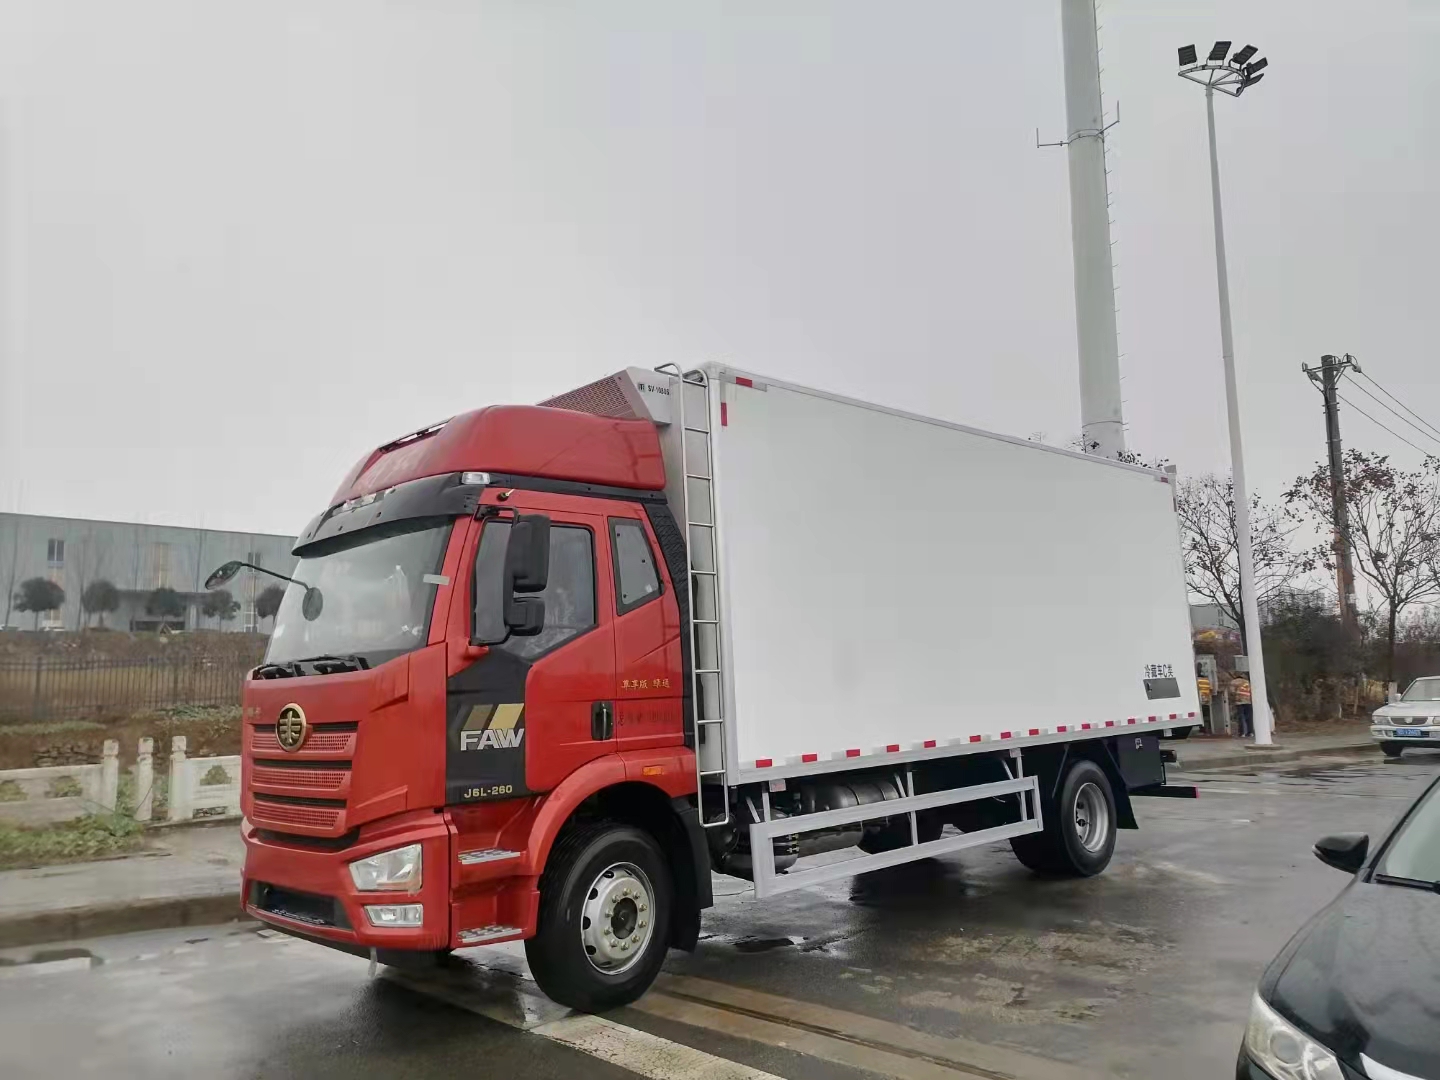 国六解放J6L 6.8米冷藏车